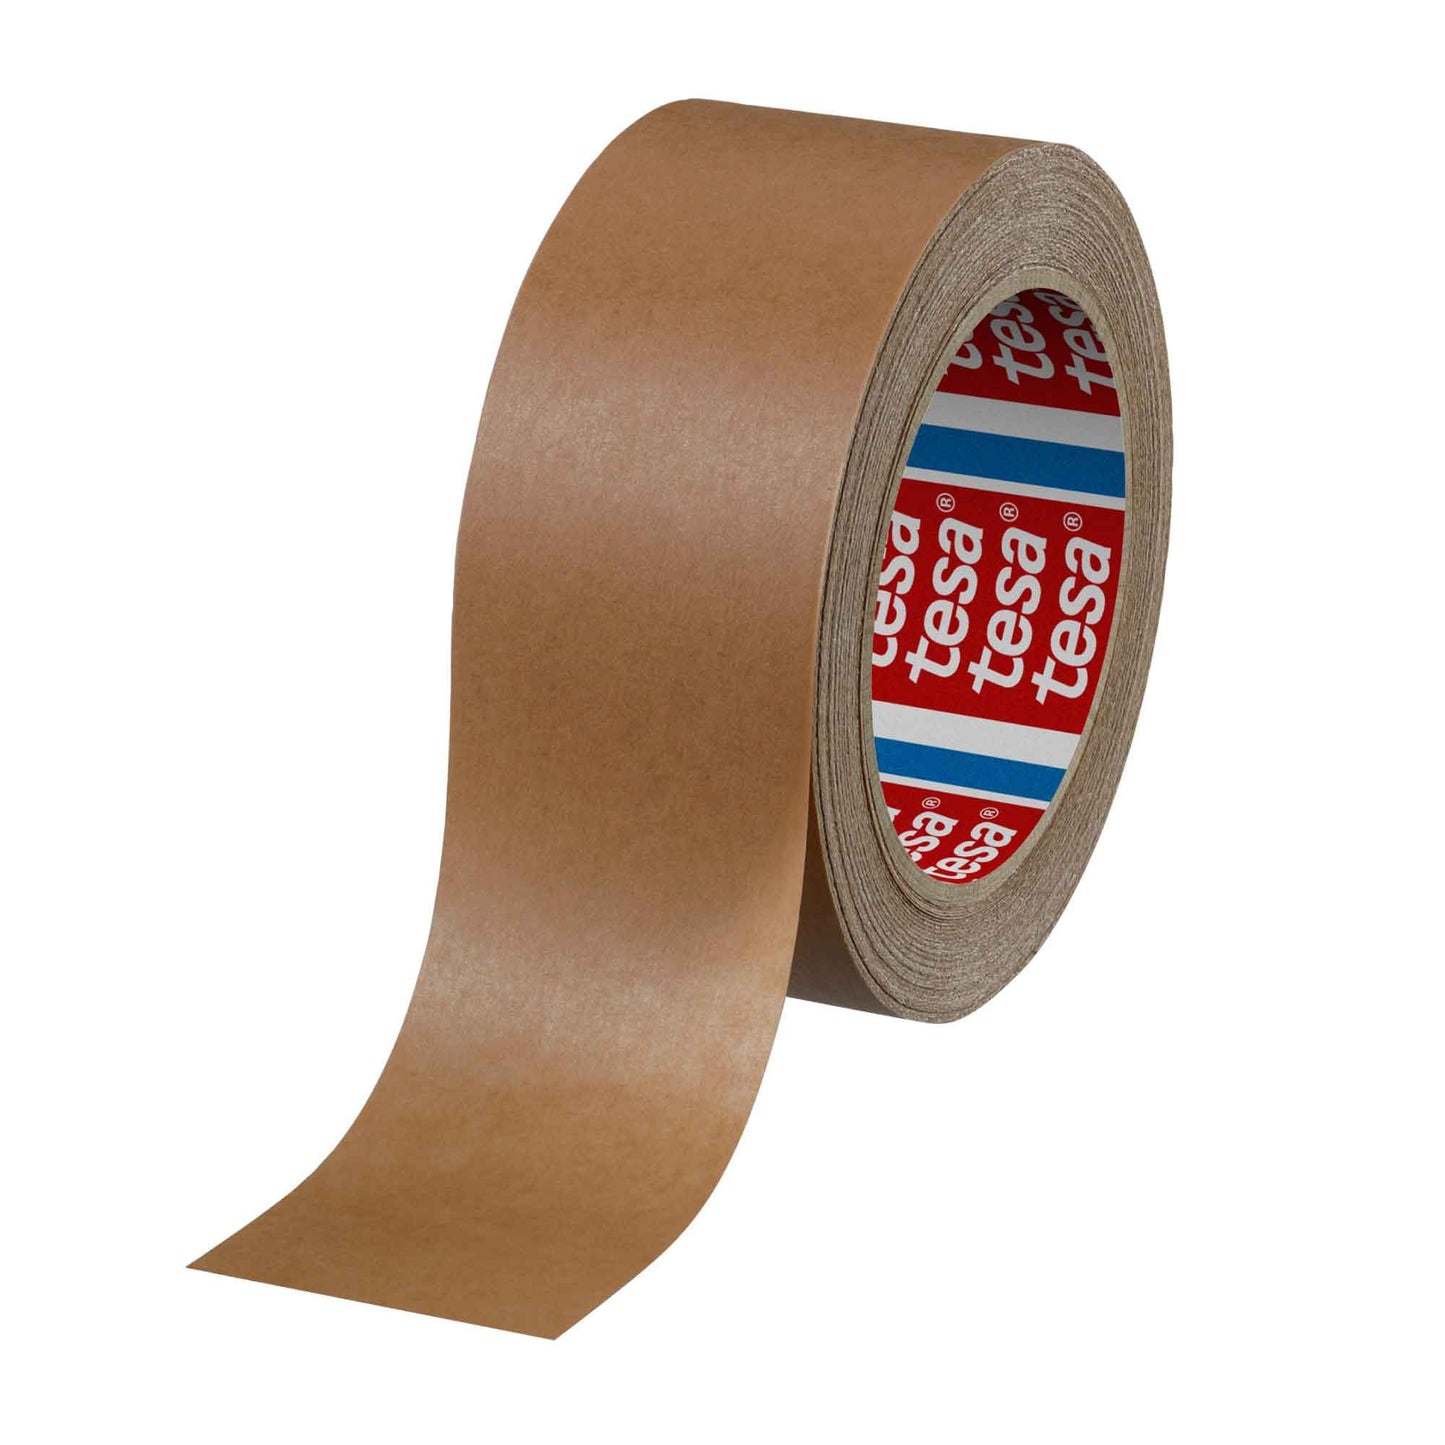 6x Eco Packing Tape 48mmx50m - Brown Kraft Paper Carton Sealing Tesa 4315